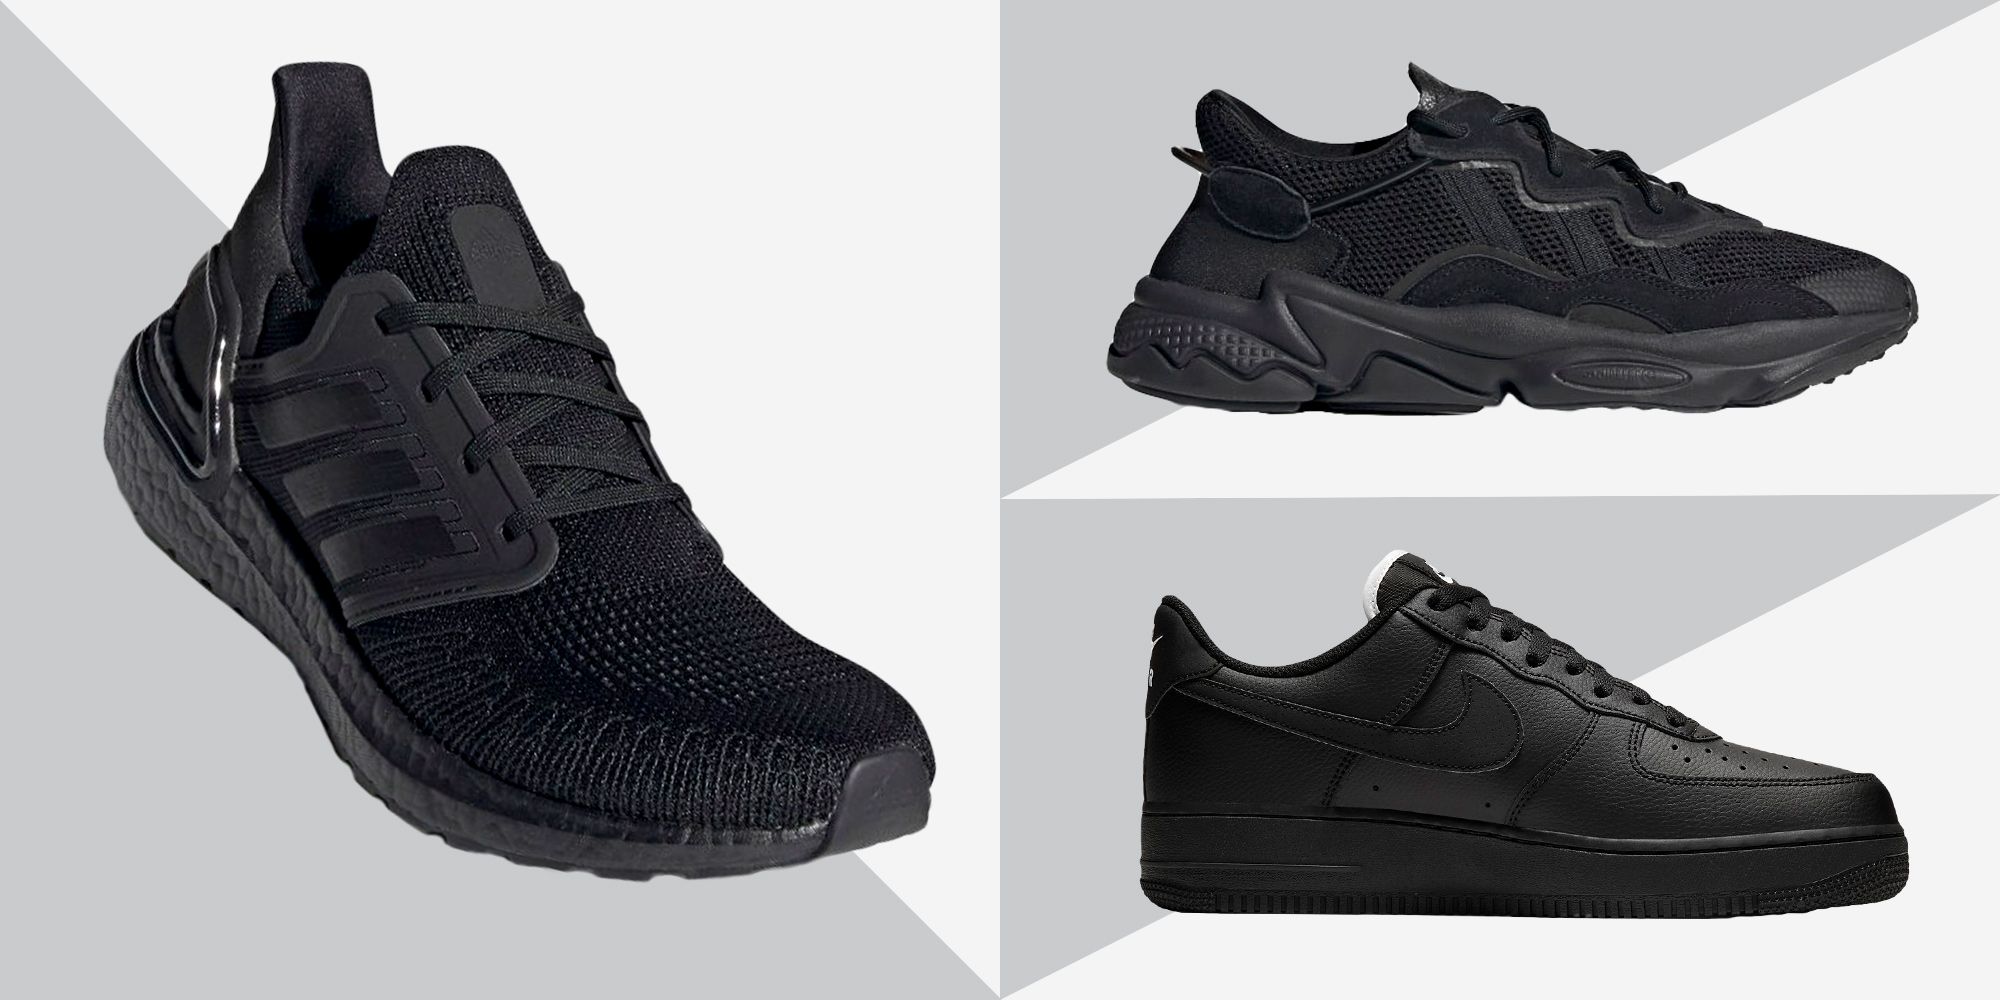 black sneakers